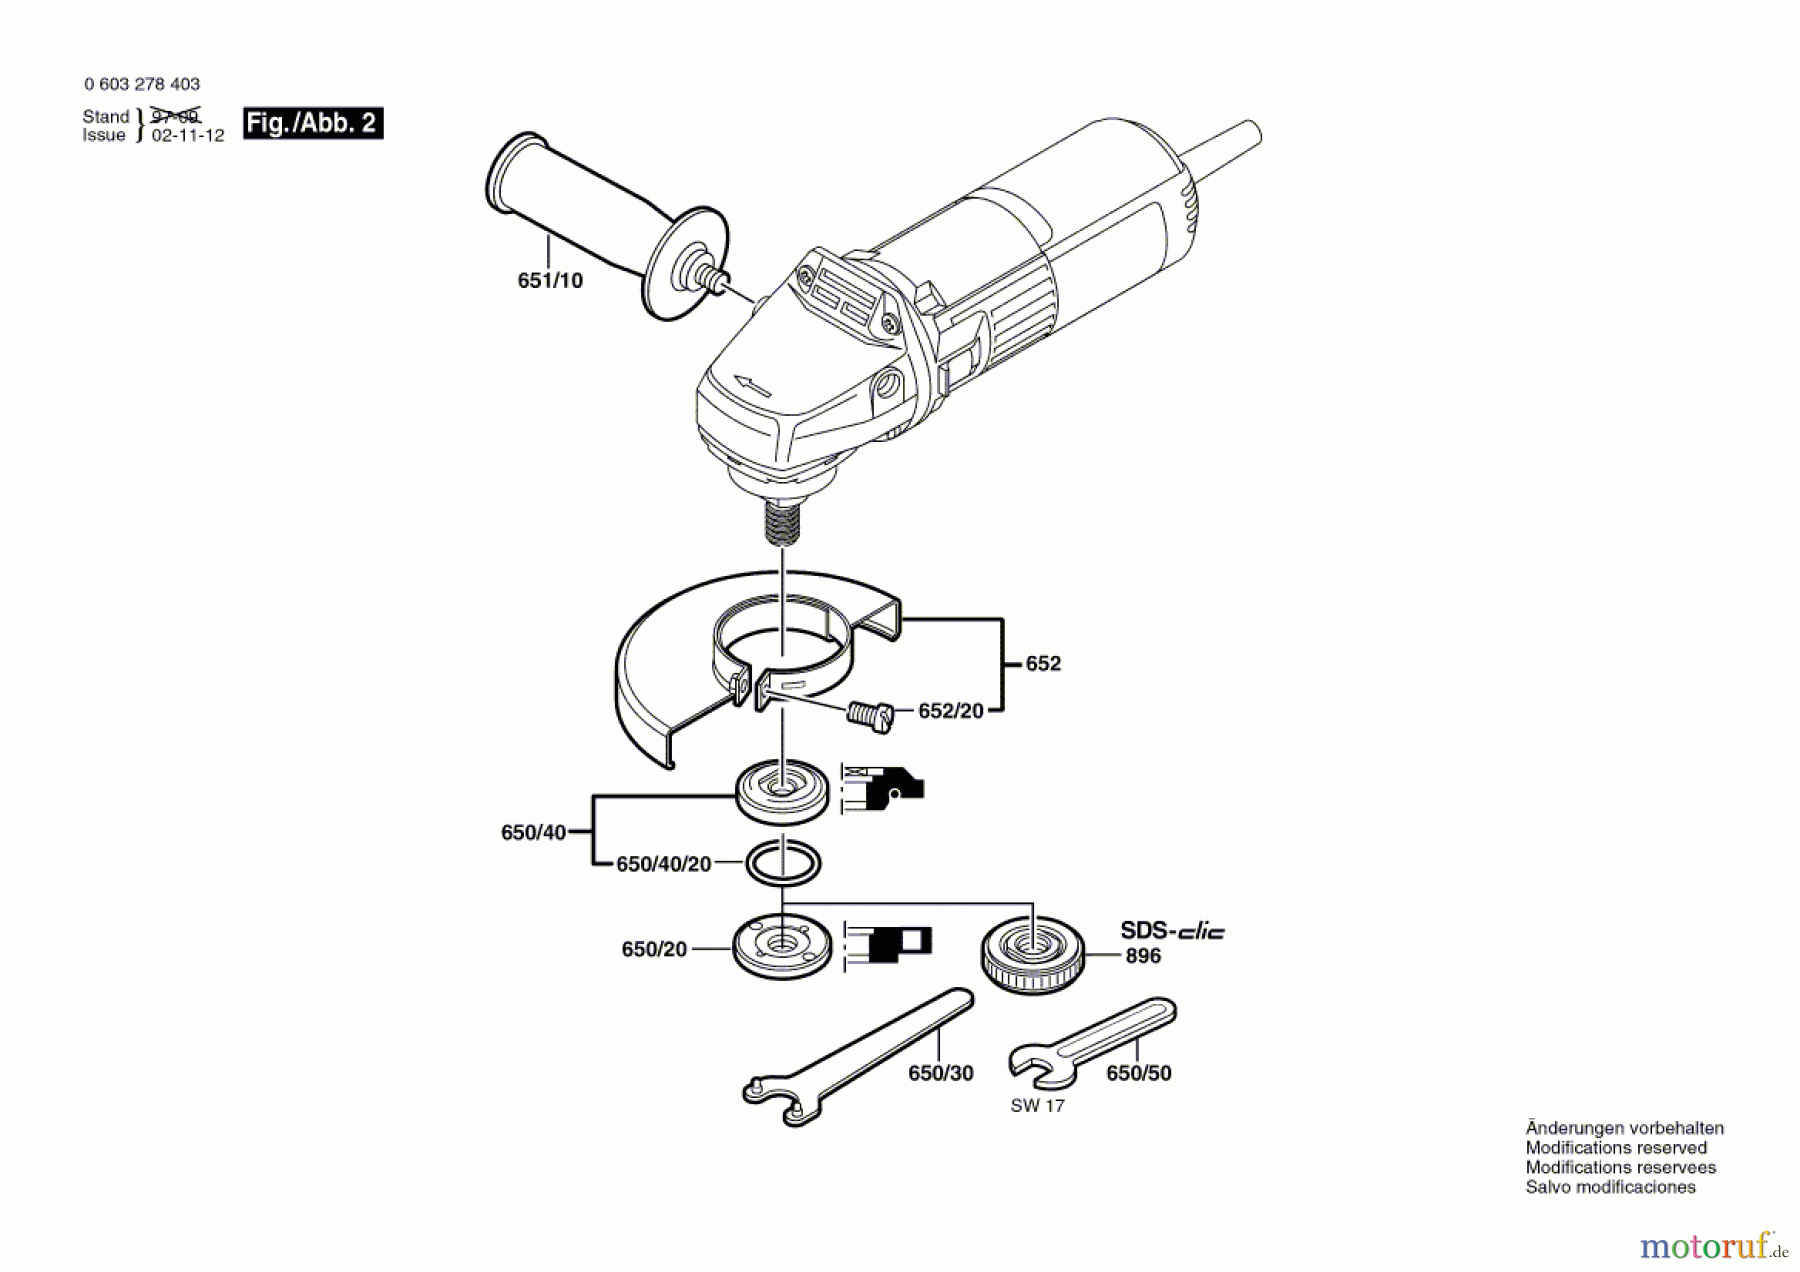  Bosch Werkzeug Winkelschleifer PWS 6-115 Seite 2